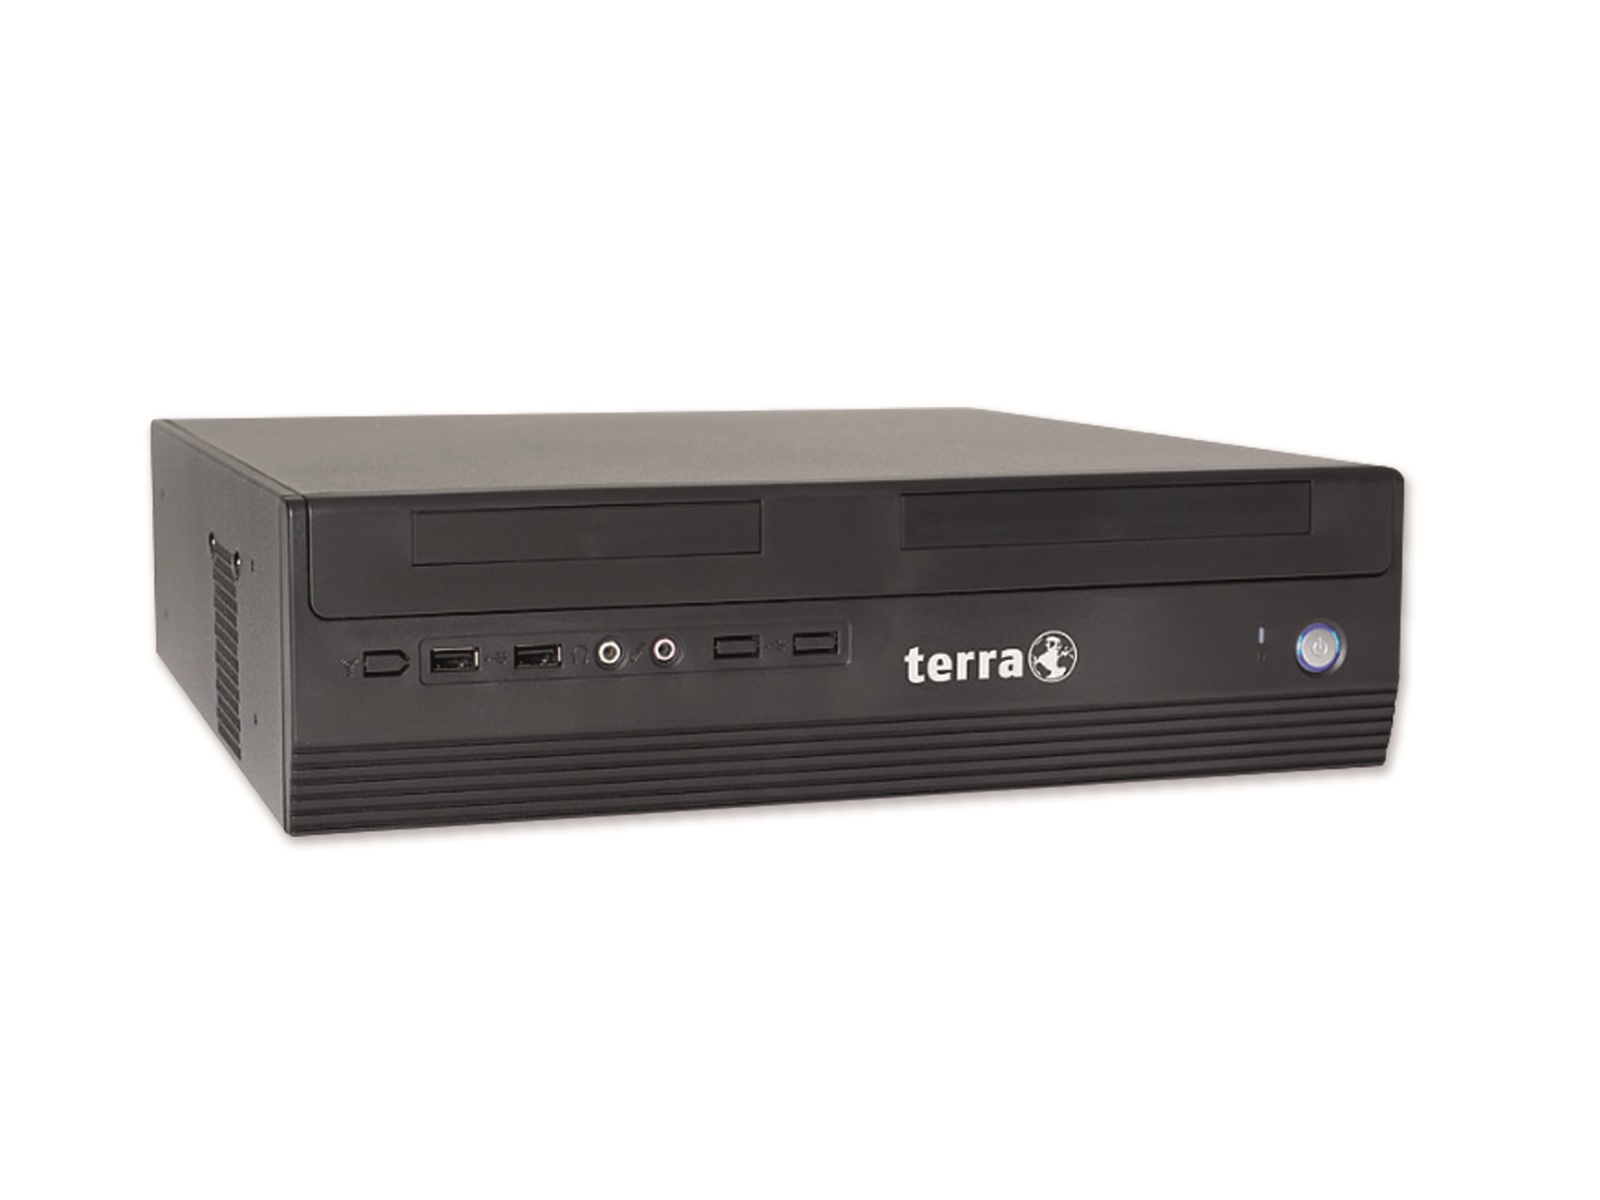 TERRA PC DT 1008157, i3-4170, 8GB RAM, 256GB SSD, 500GB HDD, Win10H, Refurbished